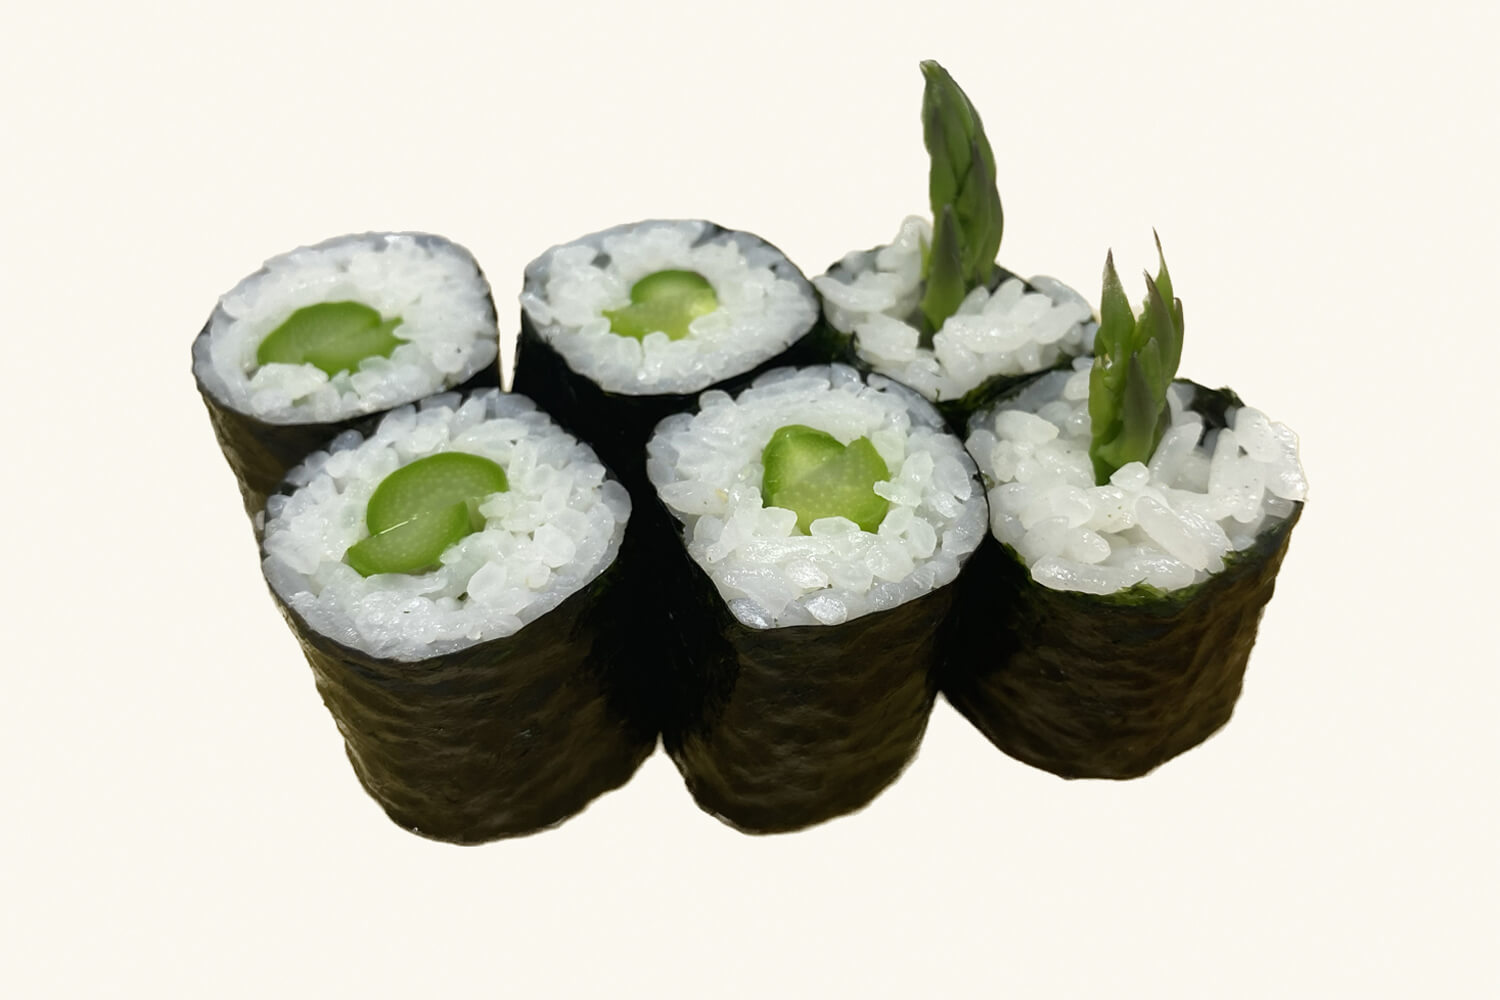 Edokko Nigiri Sushi Menu